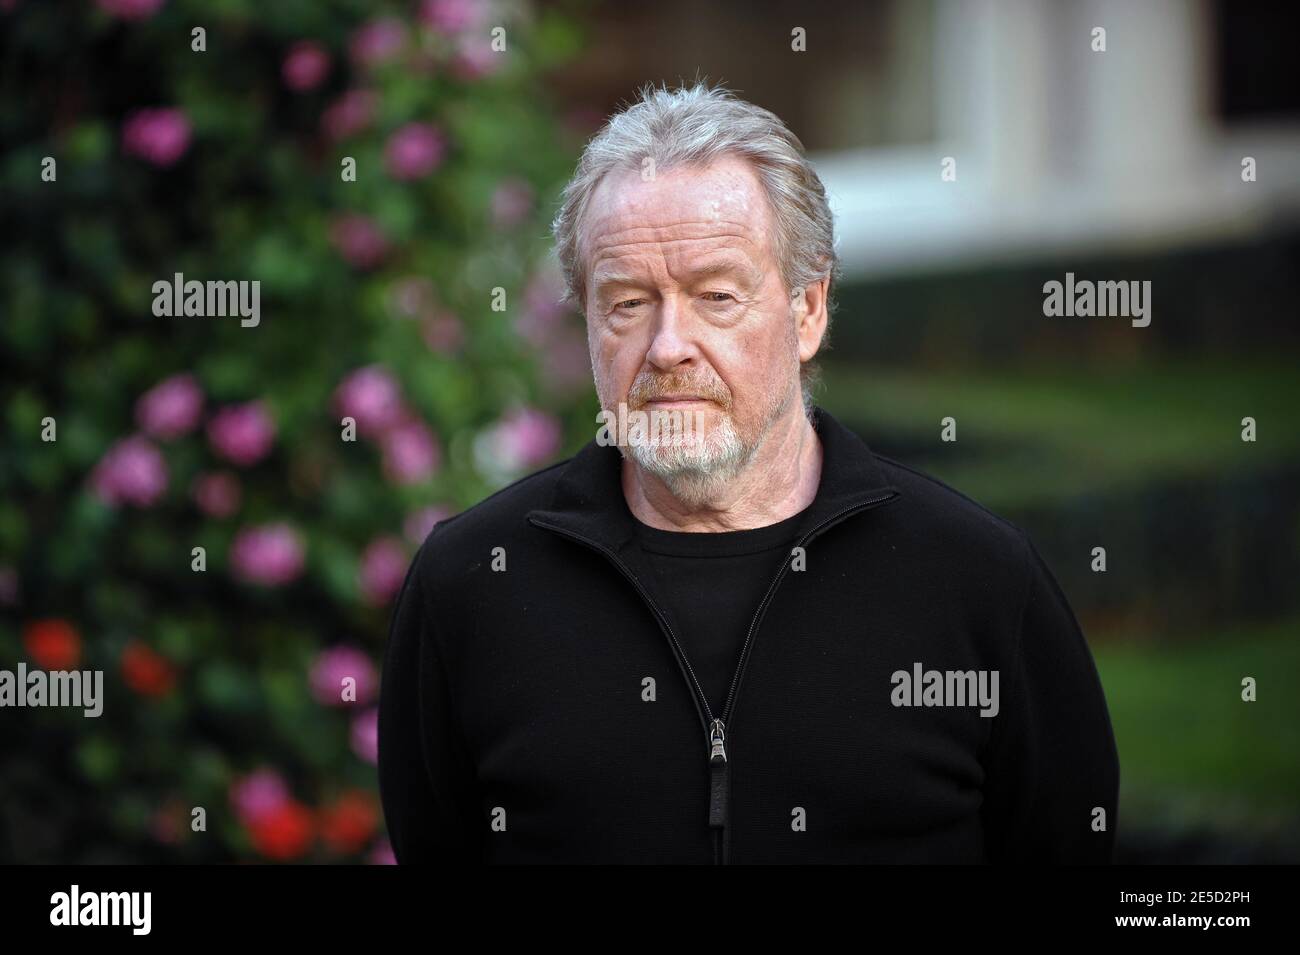 US-Regisseur Ridley Scott posiert während einer Fotoaufnahme für seinen Film 'Body of Lies' im Hotel Bristol in Paris, Frankreich, am 3. November 2008. 'Body of Lies' wird ab dem 5. November 2008 in Frankreich gezeigt. Foto von Thierry Orban/ABACAPRESS.COM Stockfoto